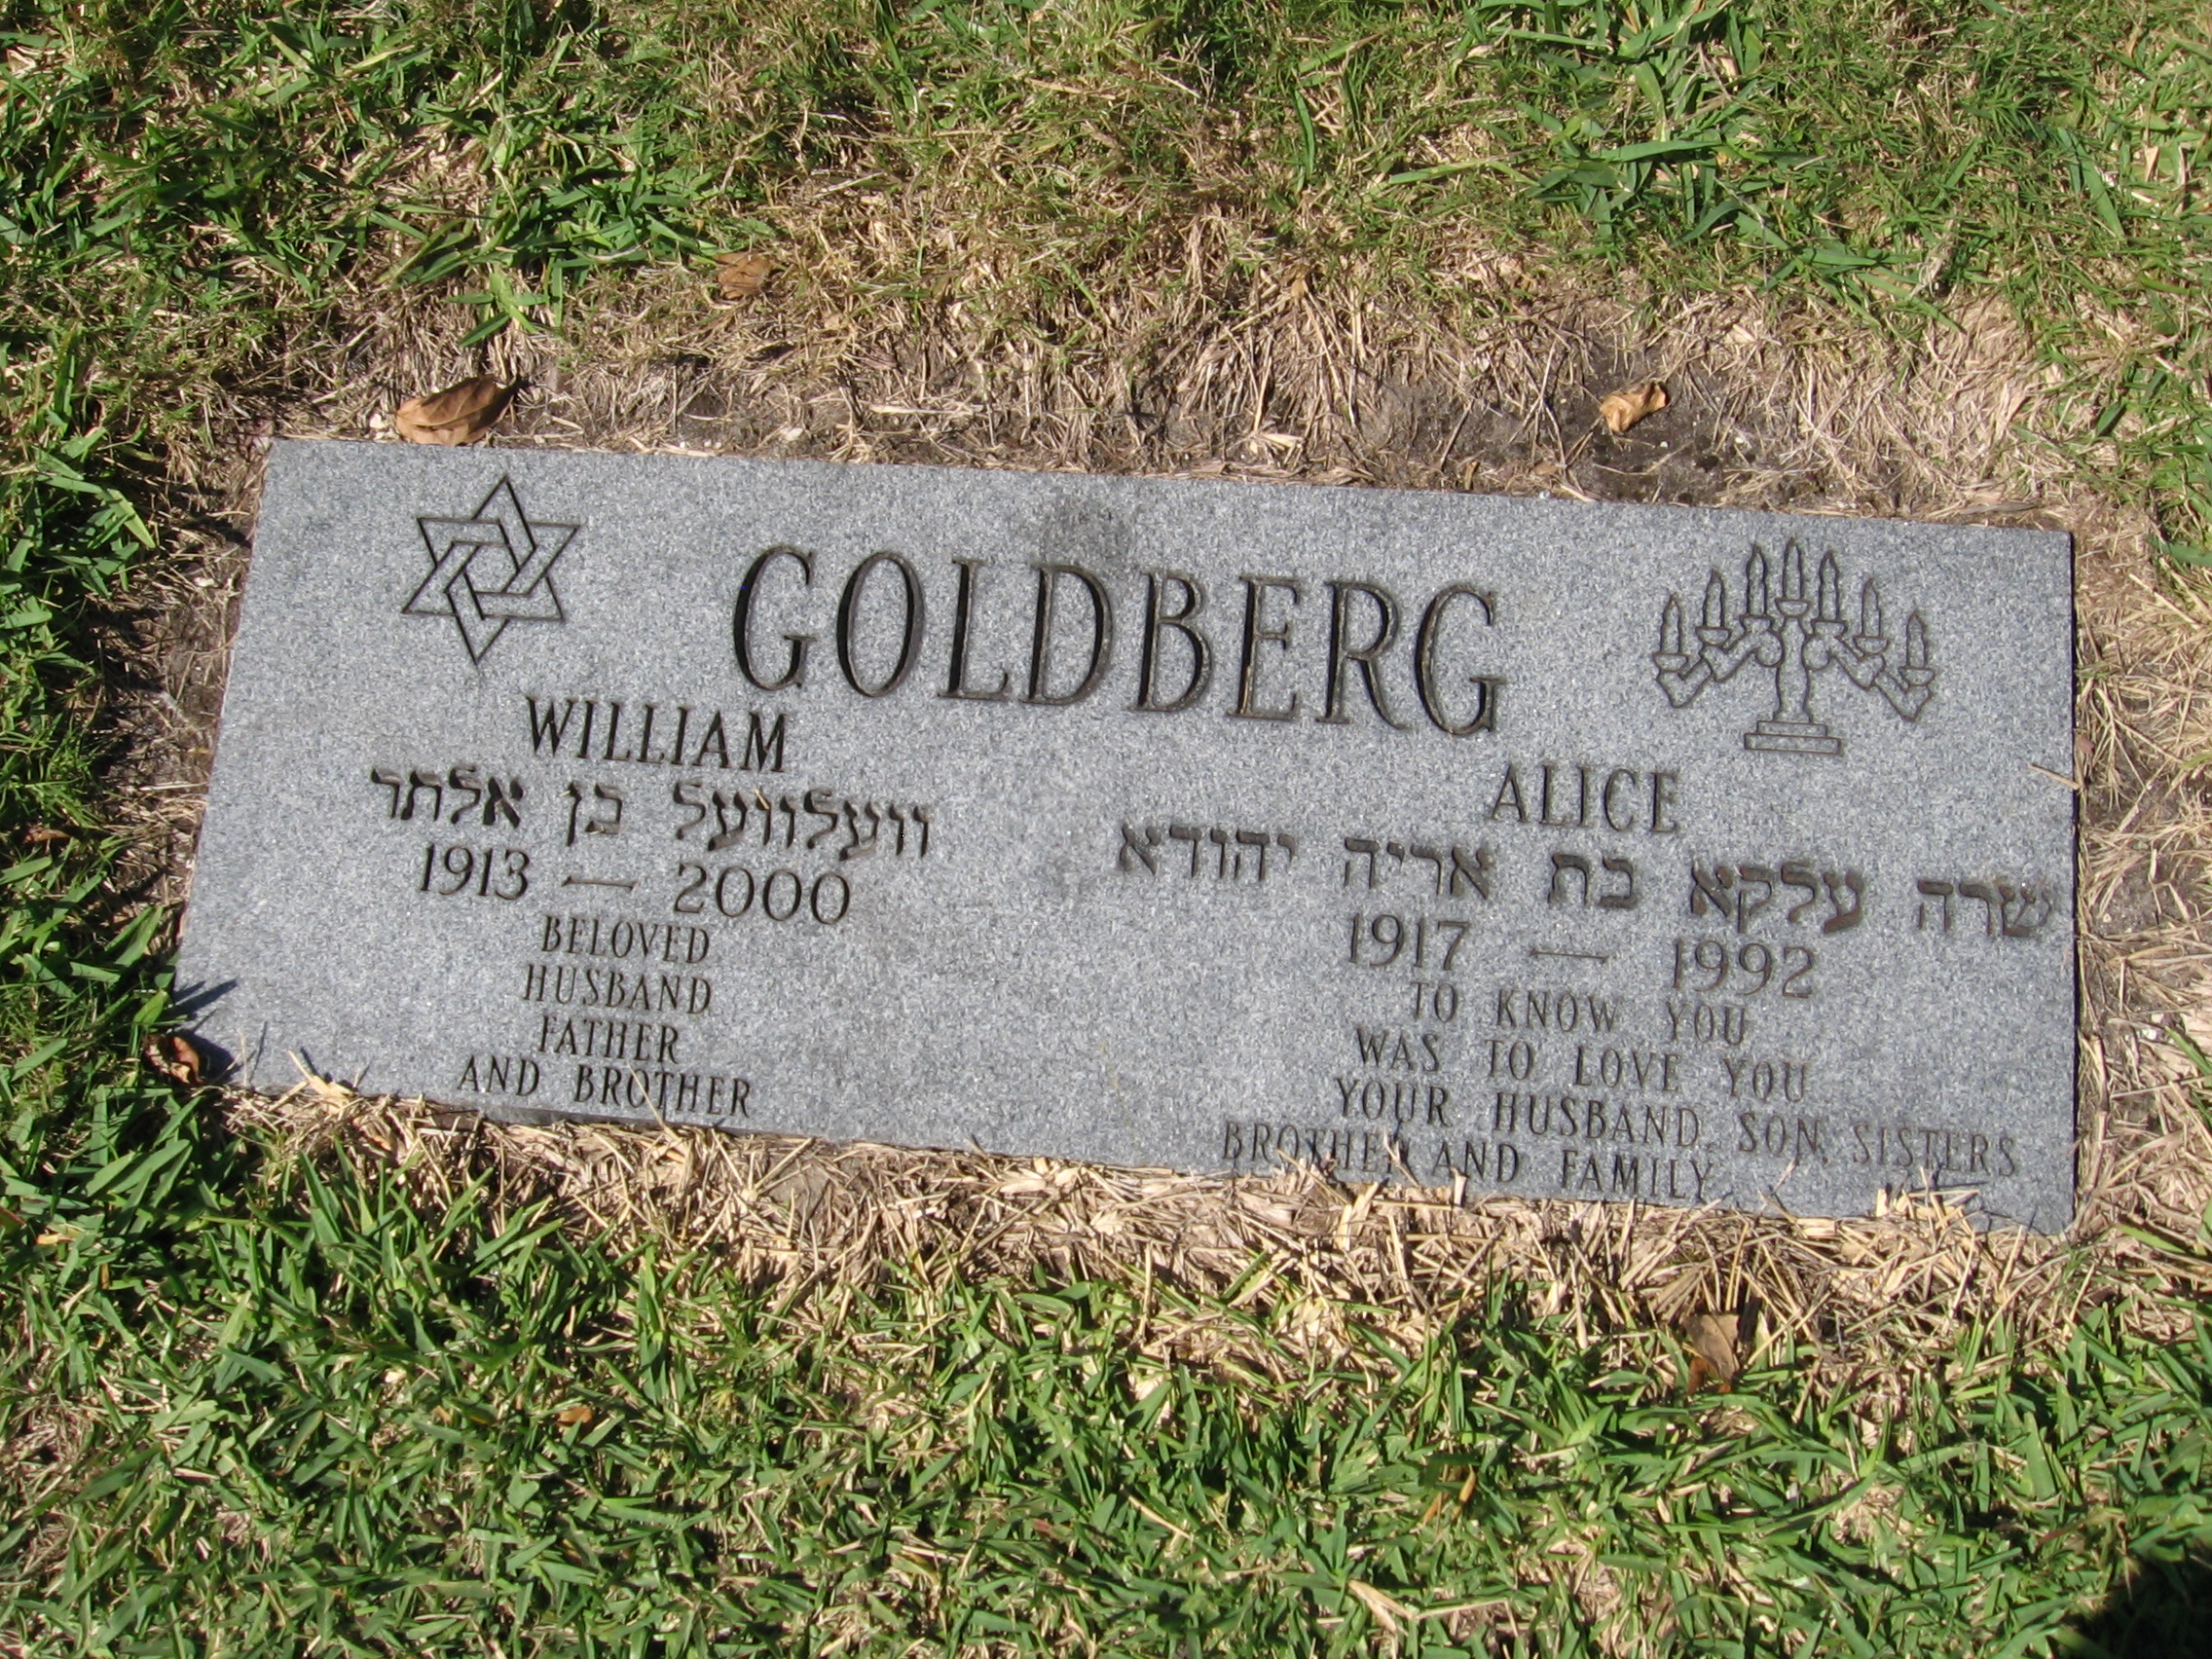 William Goldberg